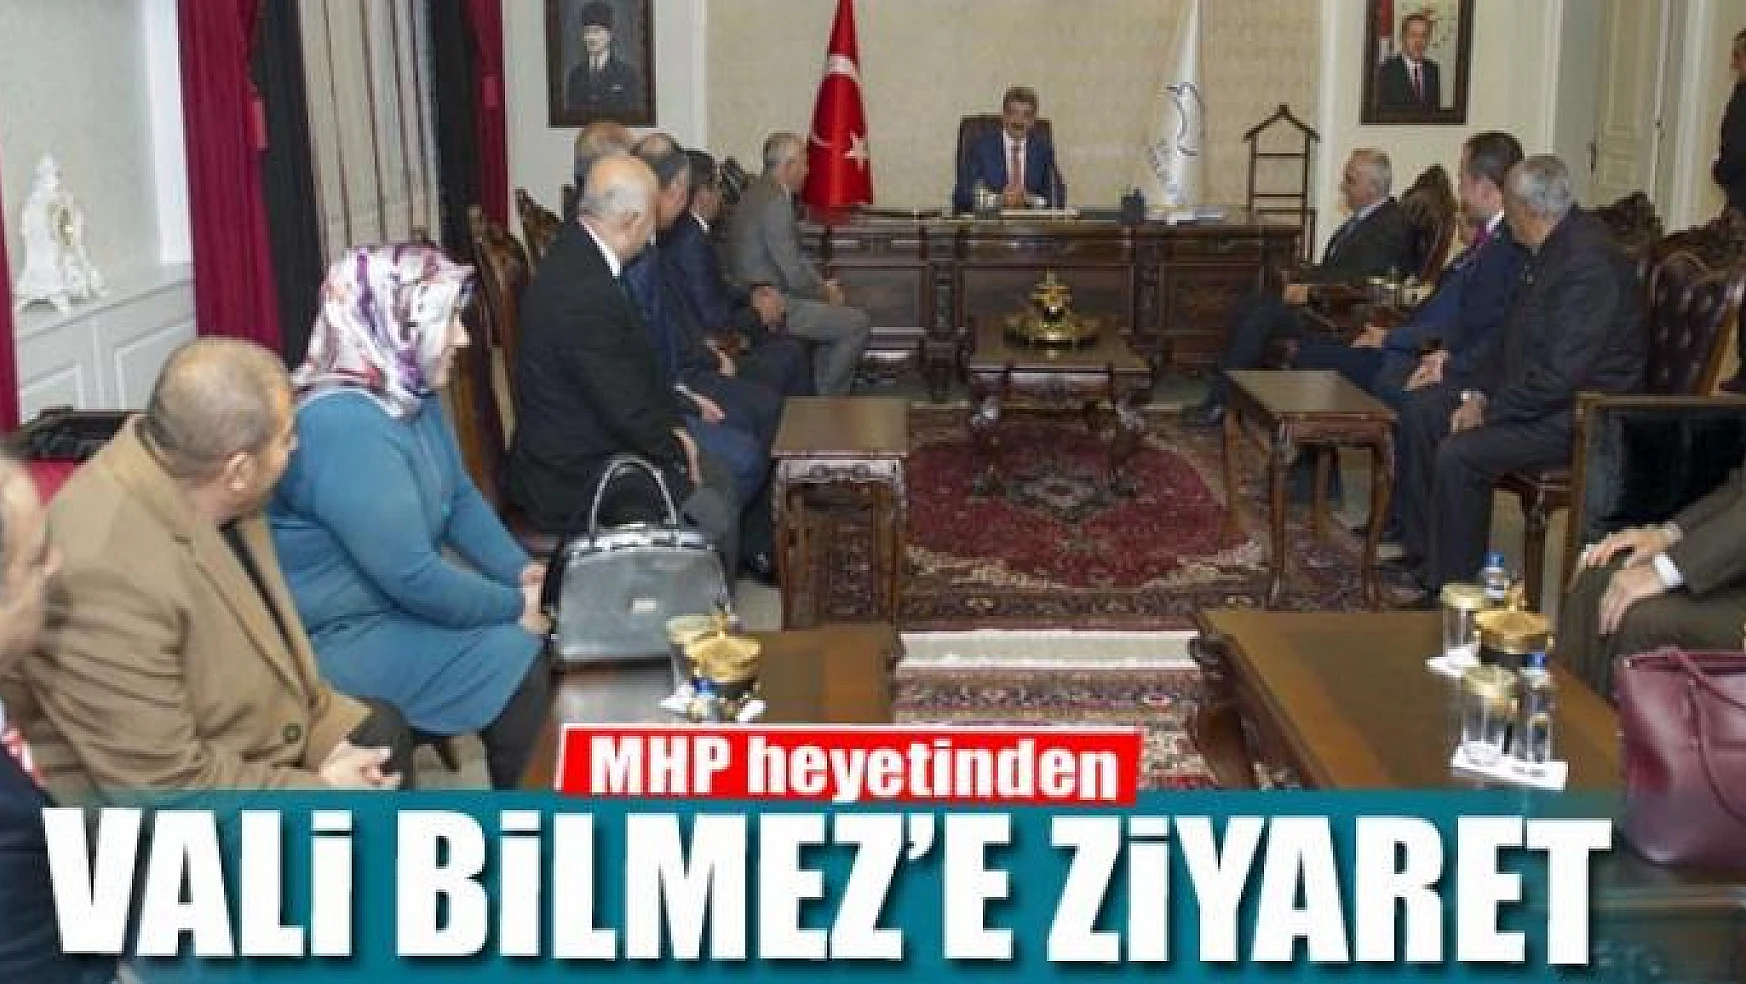 MHP heyetinden Vali Bilmez'e ziyaret